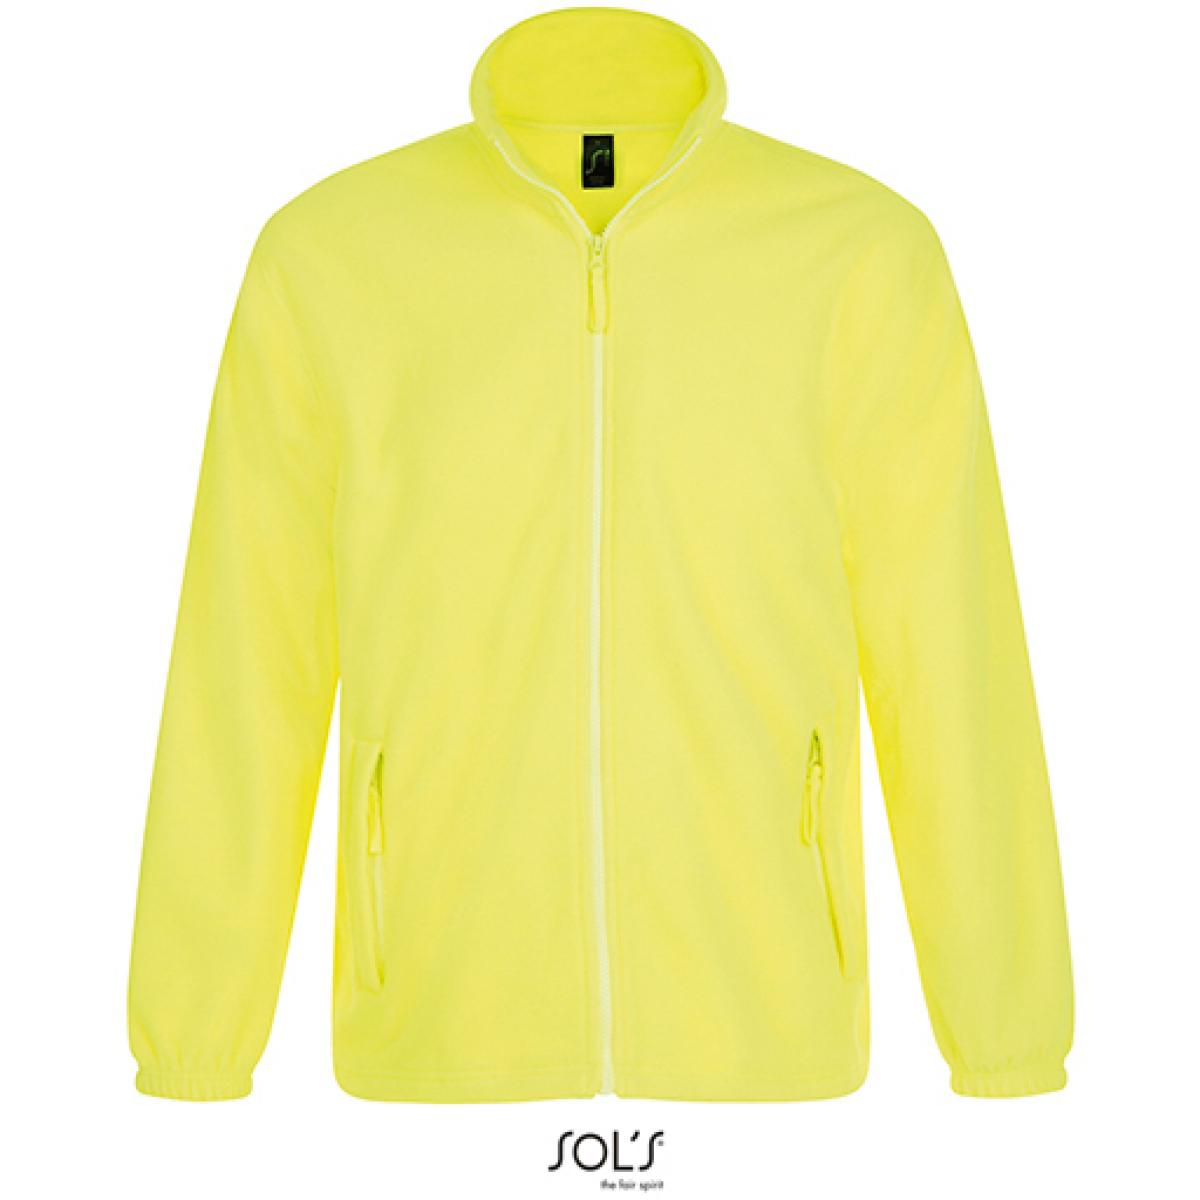 Hersteller: SOLs Herstellernummer: 55000 Artikelbezeichnung: Fleecejacket North / Herren Jacke bis 5XL Farbe: Neon Yellow